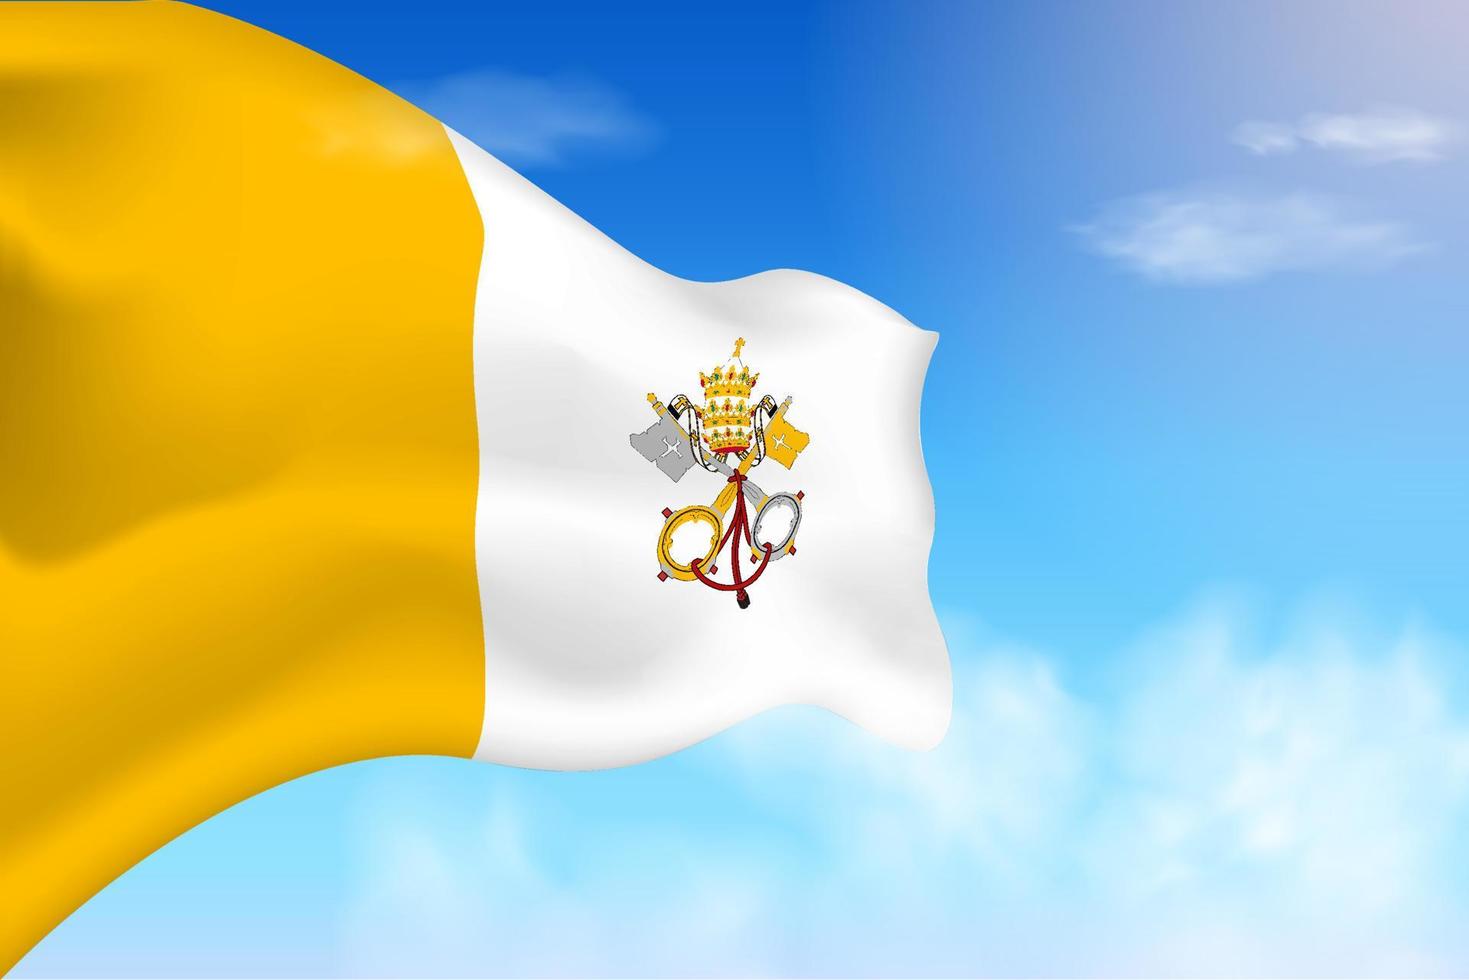 drapeau de la cité du vatican dans les nuages. drapeau de vecteur agitant dans le ciel. illustration de drapeau réaliste de la fête nationale. vecteur de ciel bleu.